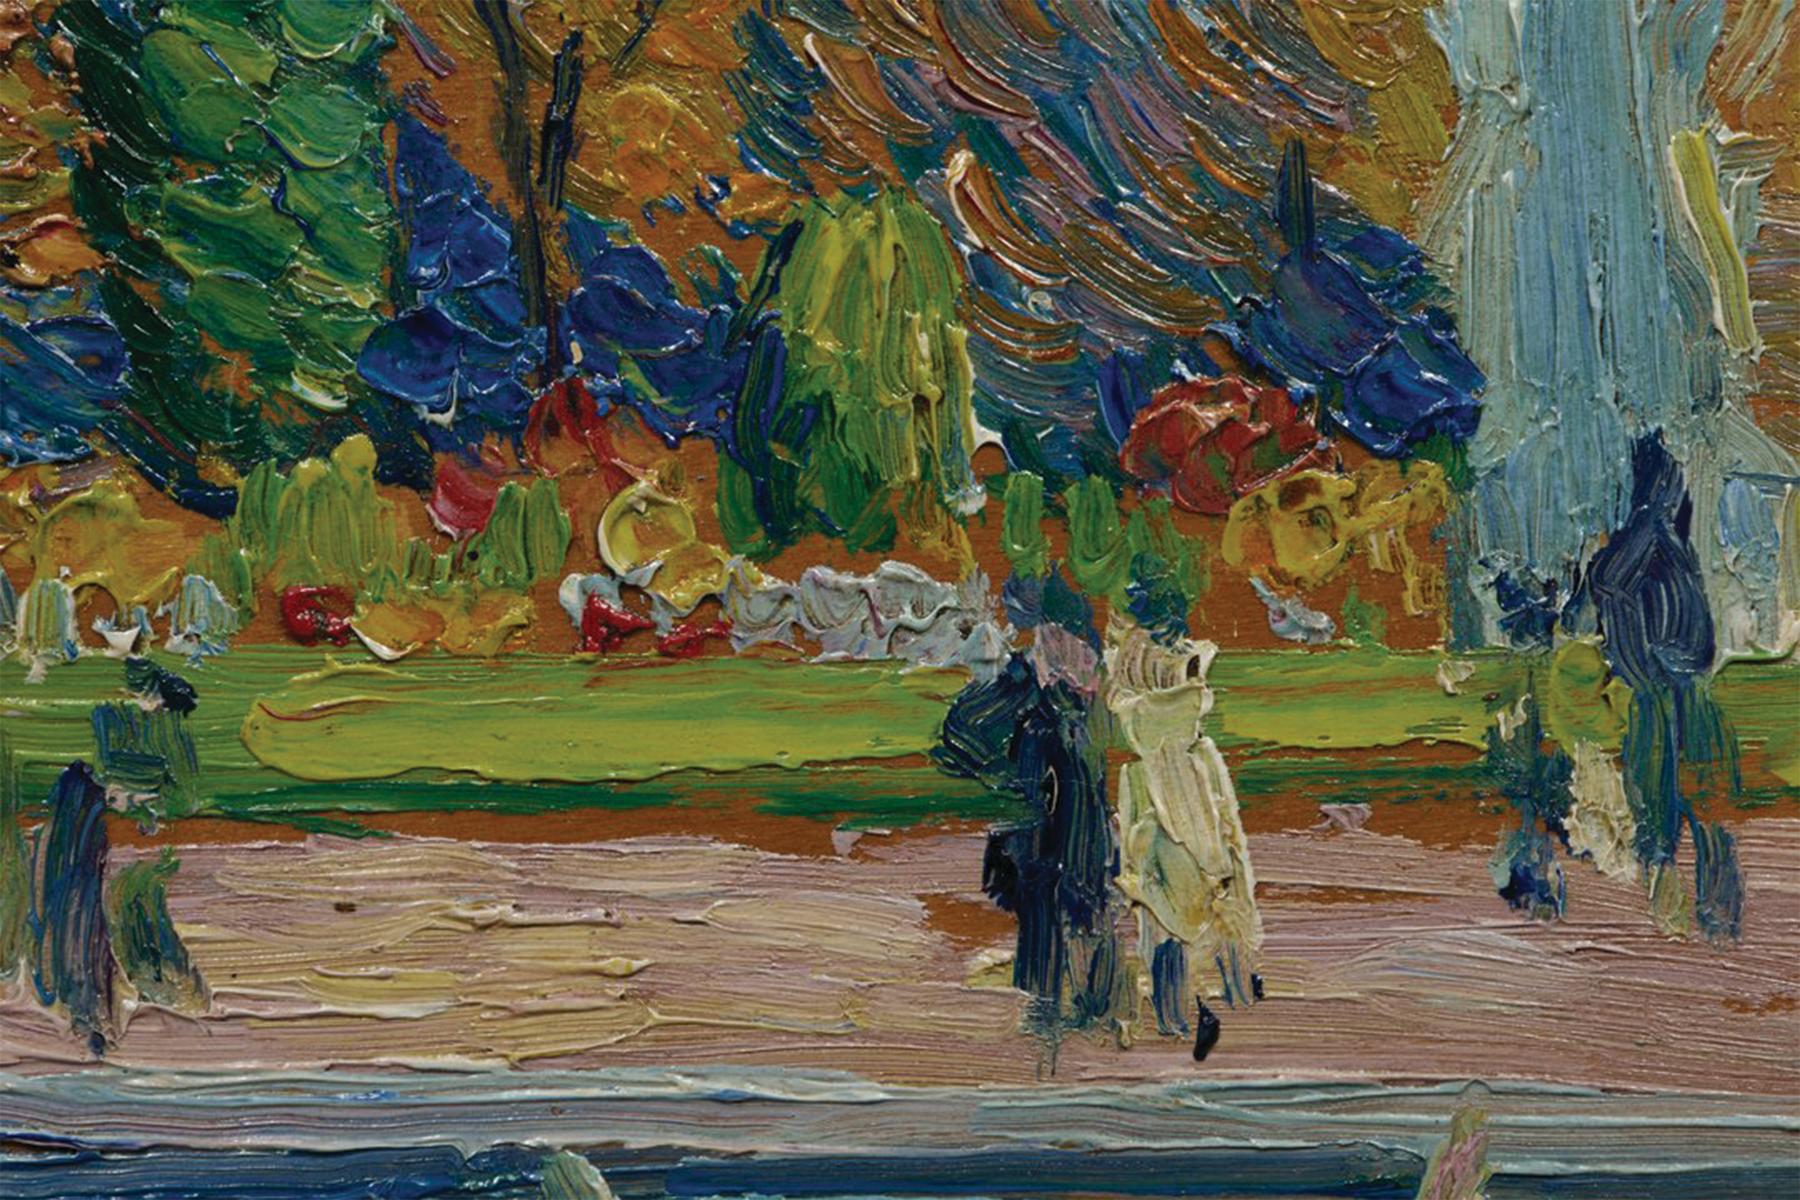 Abel Warshawsky (américain, 1883-1962)
Les jardins du Luxembourg, Paris, 1909
Huile sur panneau
Signé et daté en bas à droite, titré au verso
8.5 x 10.5 pouces
13.75 x 16 pouces, encadré

Le peintre impressionniste A.G. Warshawsky a été actif à